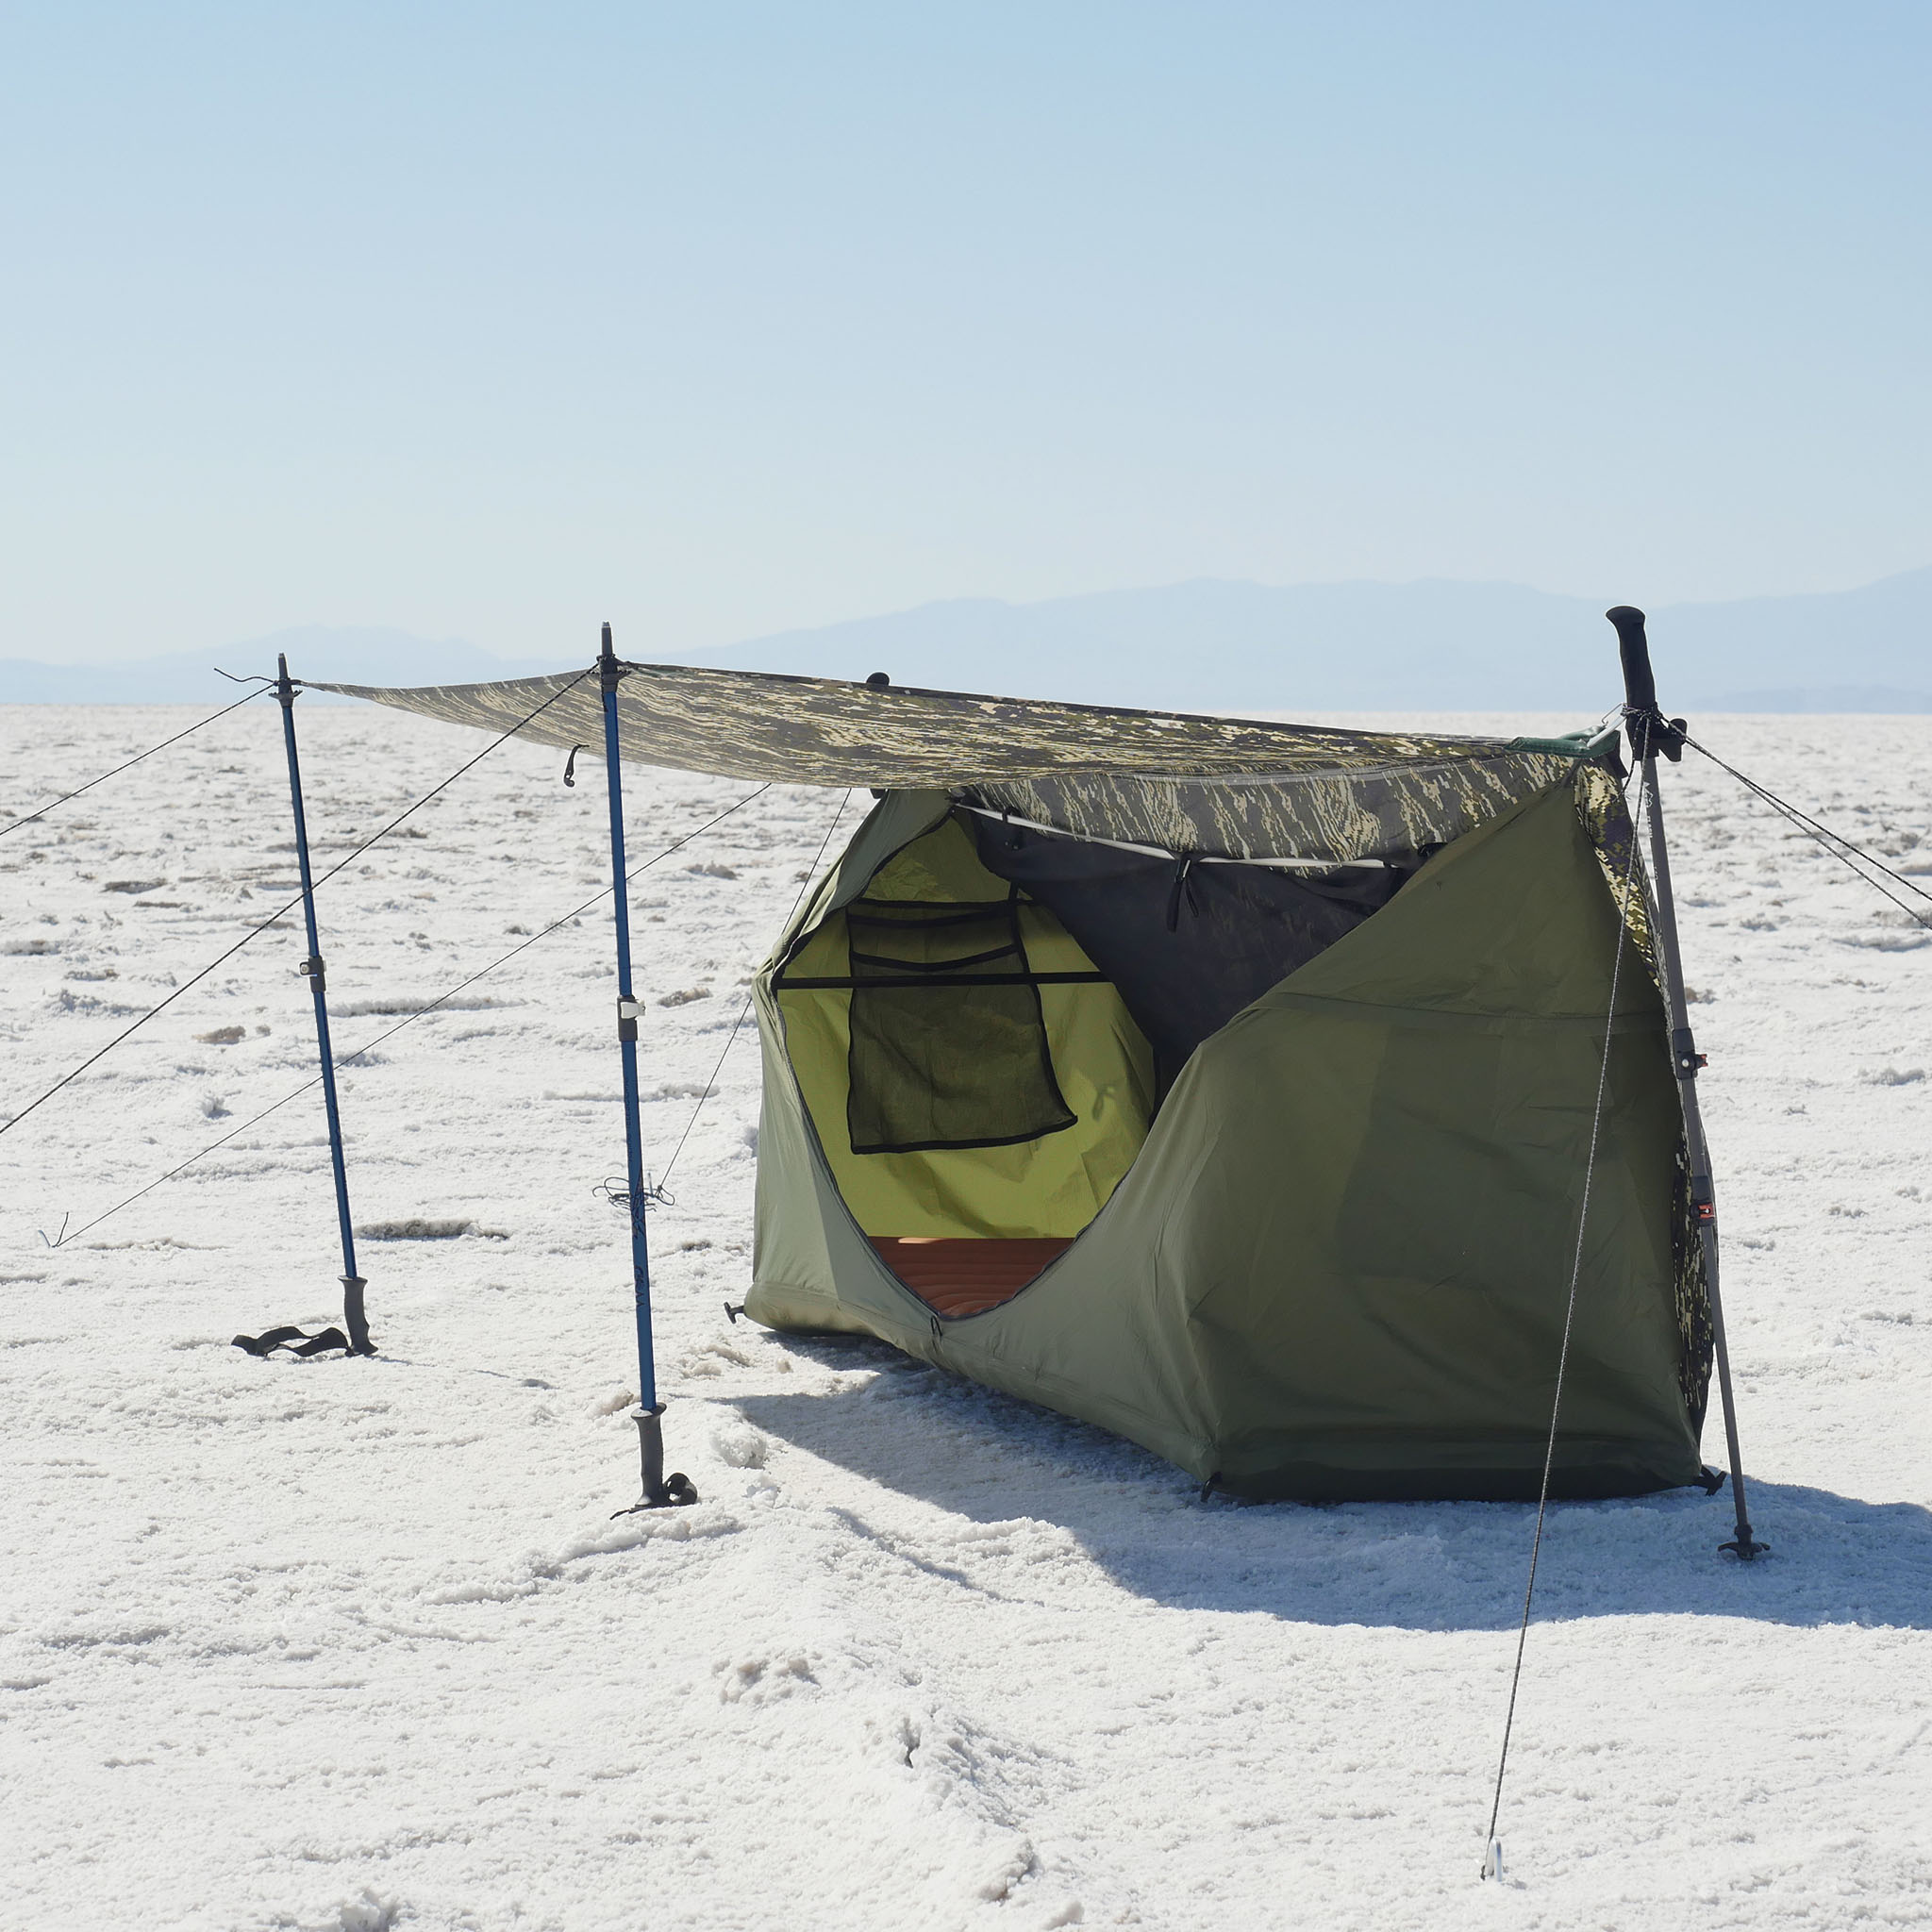 Haven Tent | Lay Flat Hammock Tent – Haven Tents